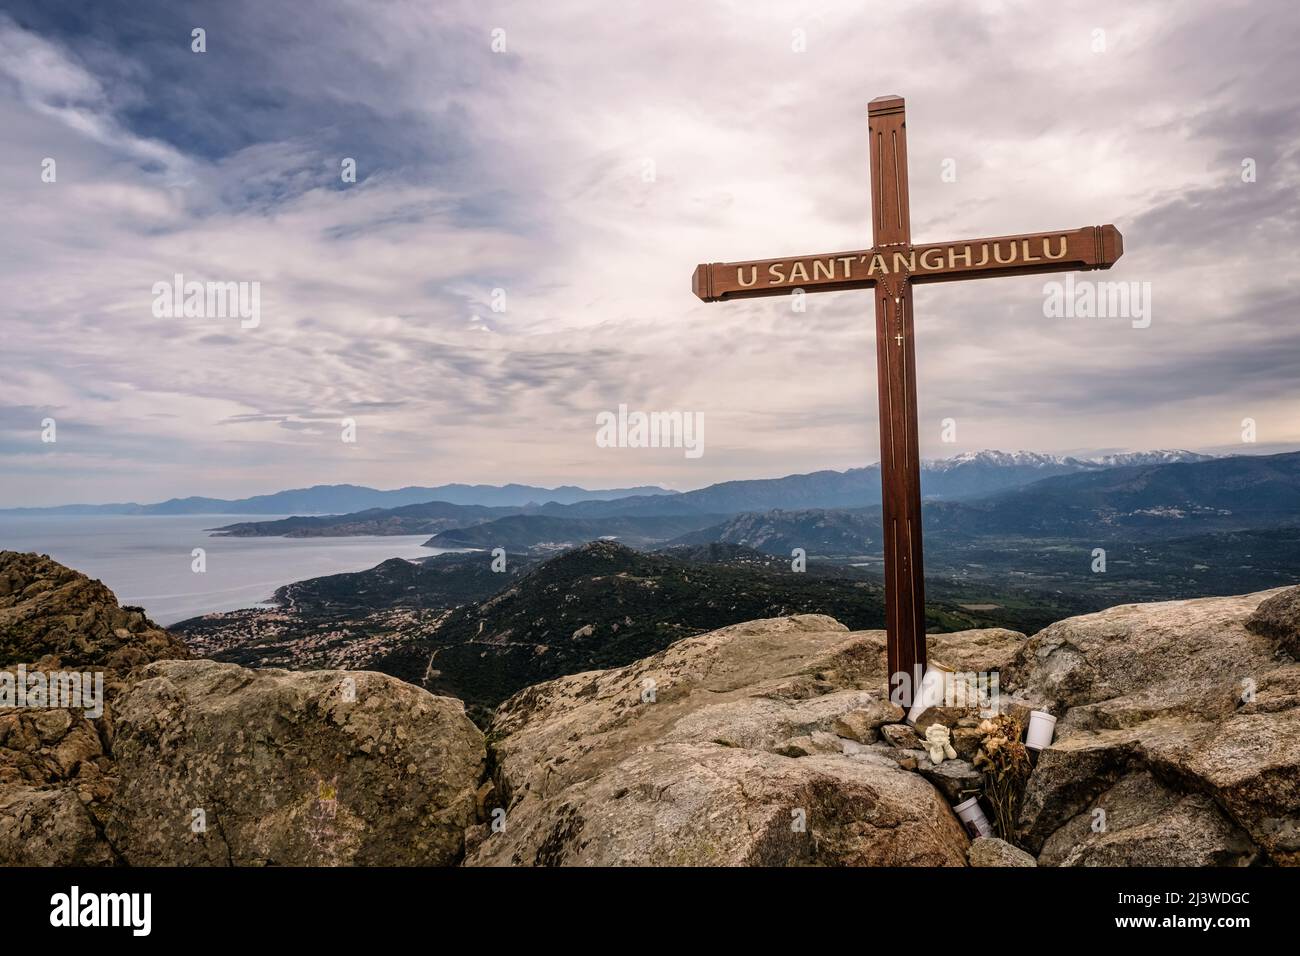 Überqueren Sie den Gipfel der Cima Sant'Anghjulu in der Nähe von Corbara in der Region Balagne von Korsika mit der Küste und schneebedeckten Bergen in der Ferne Stockfoto